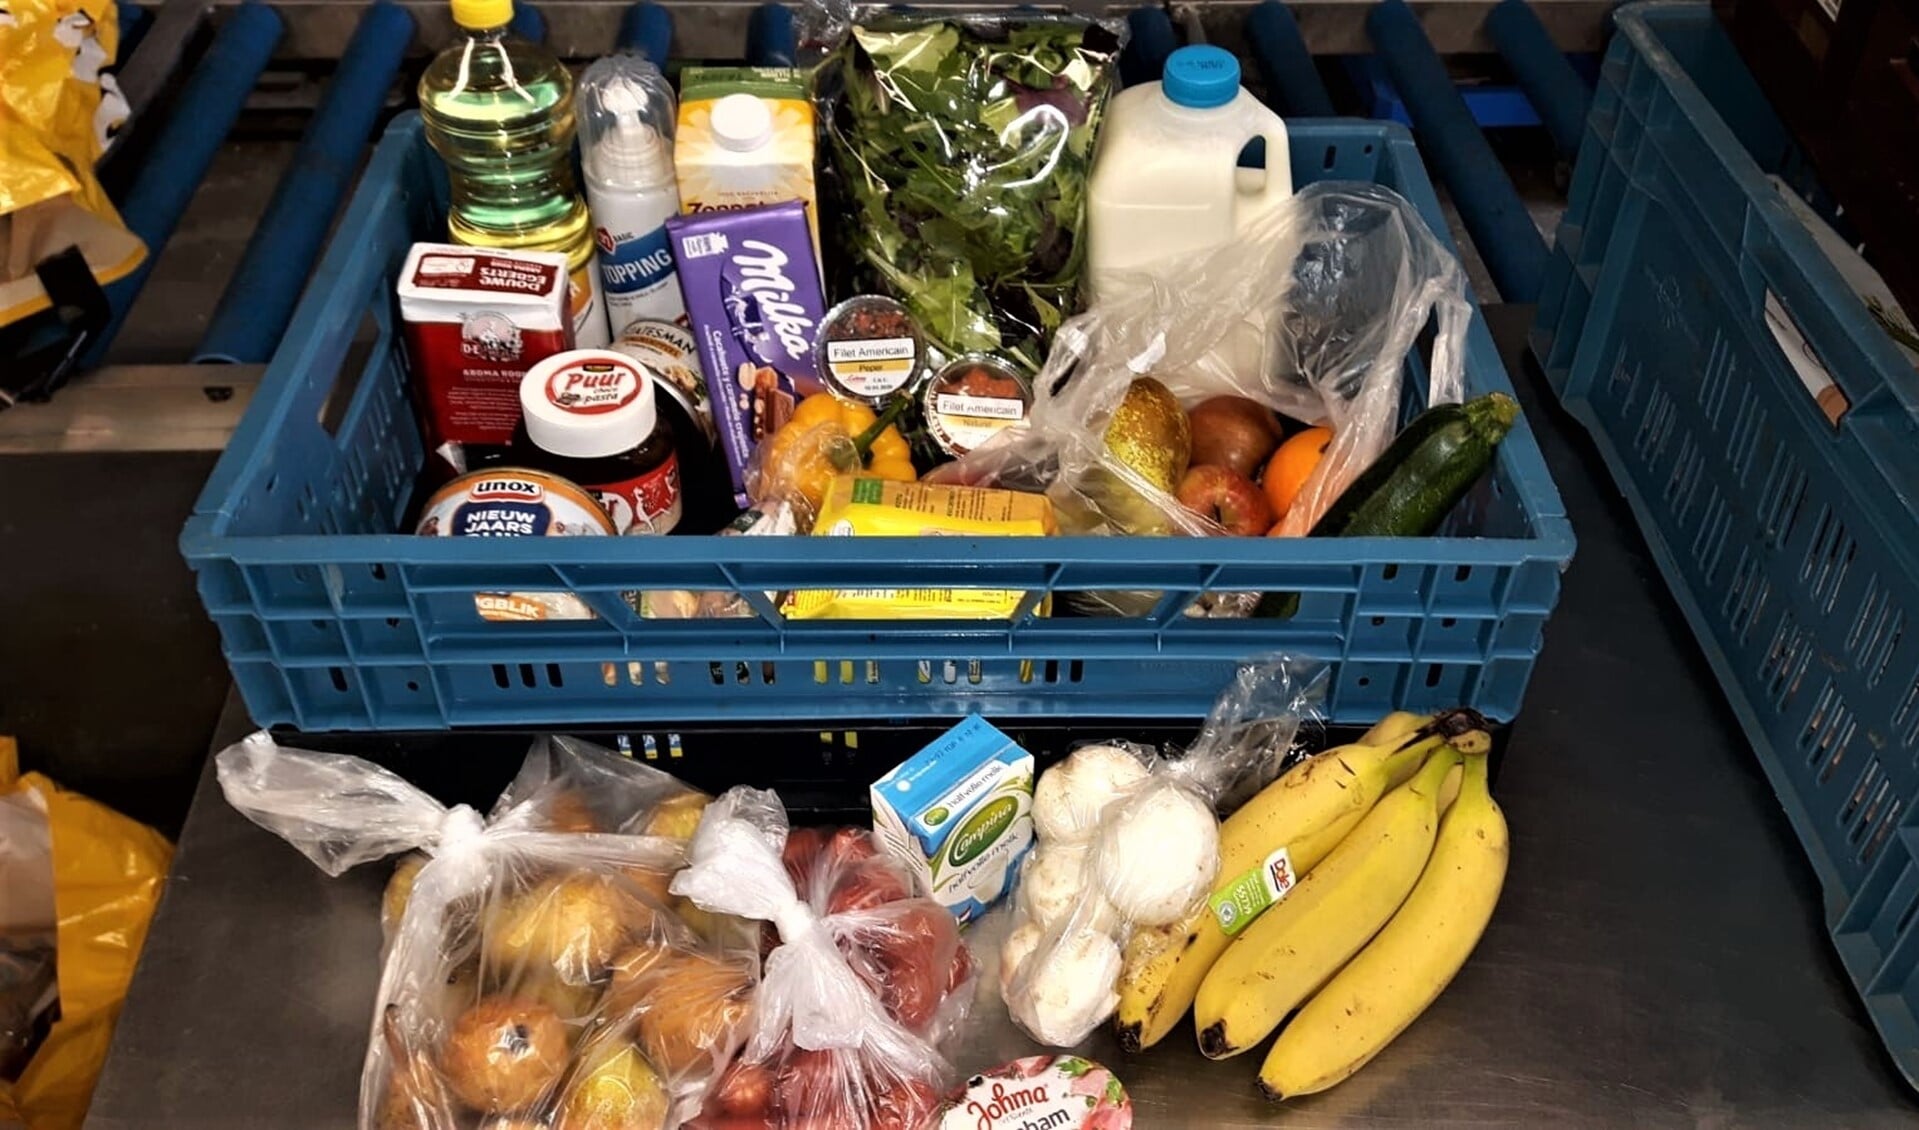 Voedselbank Leidschendam-Voorburg ontvangt financiële steun om lokaal verse producten in te kopen.